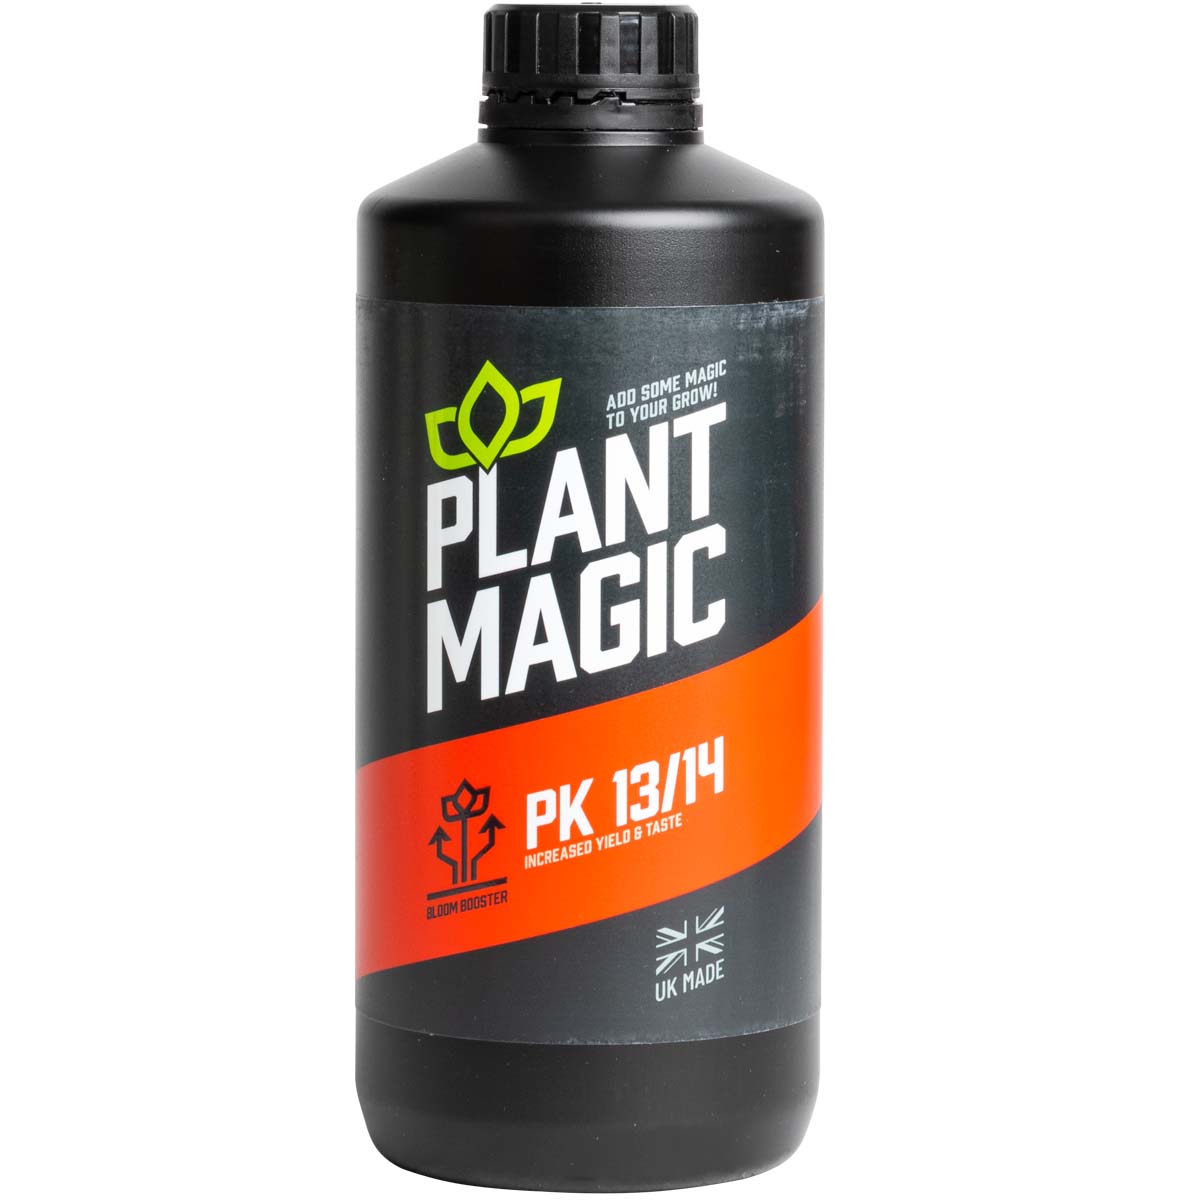 Plant Magic - PK 13/14